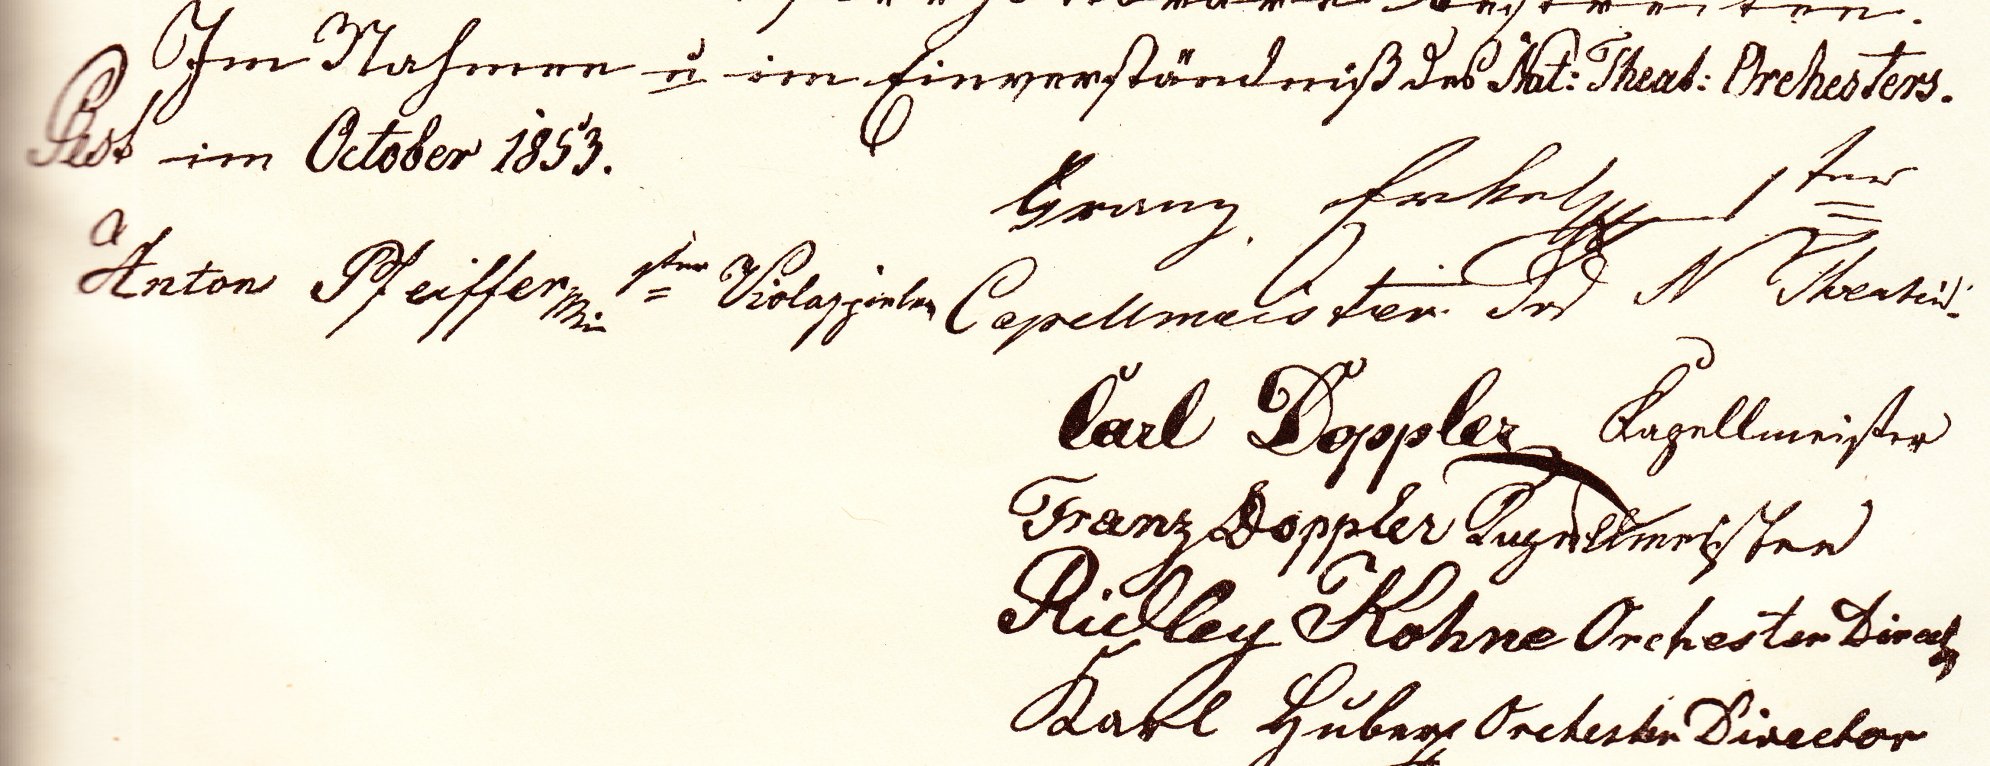 A Filharmóniai Társaság alapító okiratának aláírásai, balra Pfeiffer Antal neve, mint első brácsás.